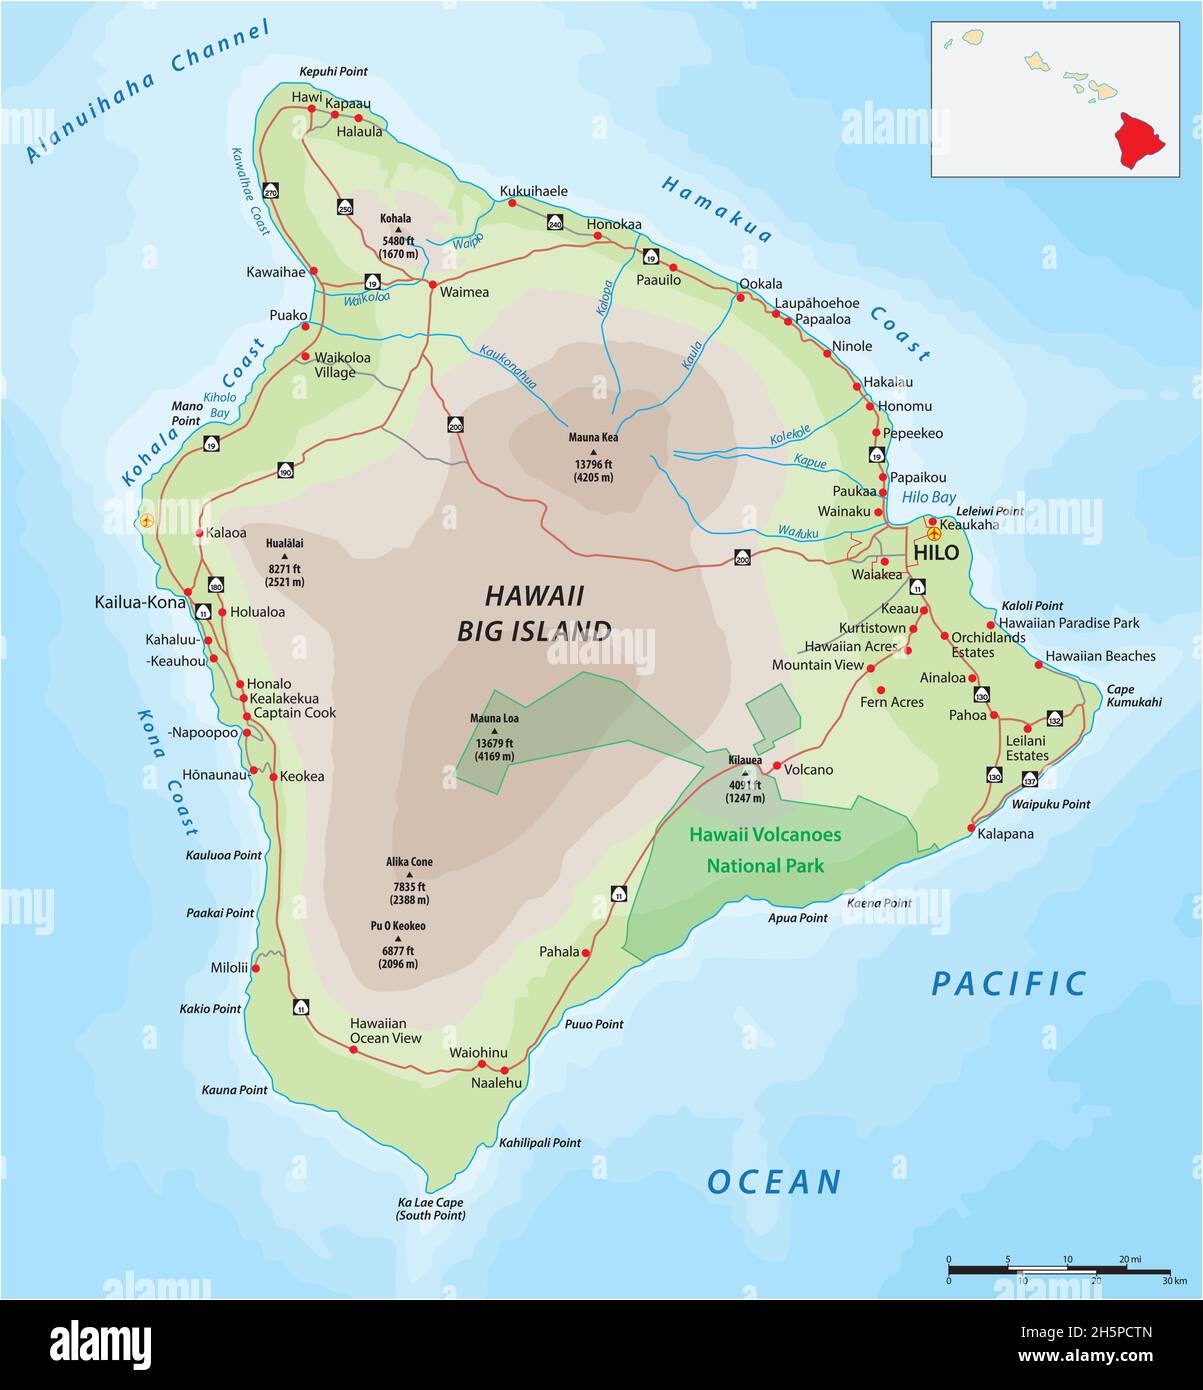 Carte routière de la plus grande île hawaïenne, Big Island, Hawaï Illustration de Vecteur